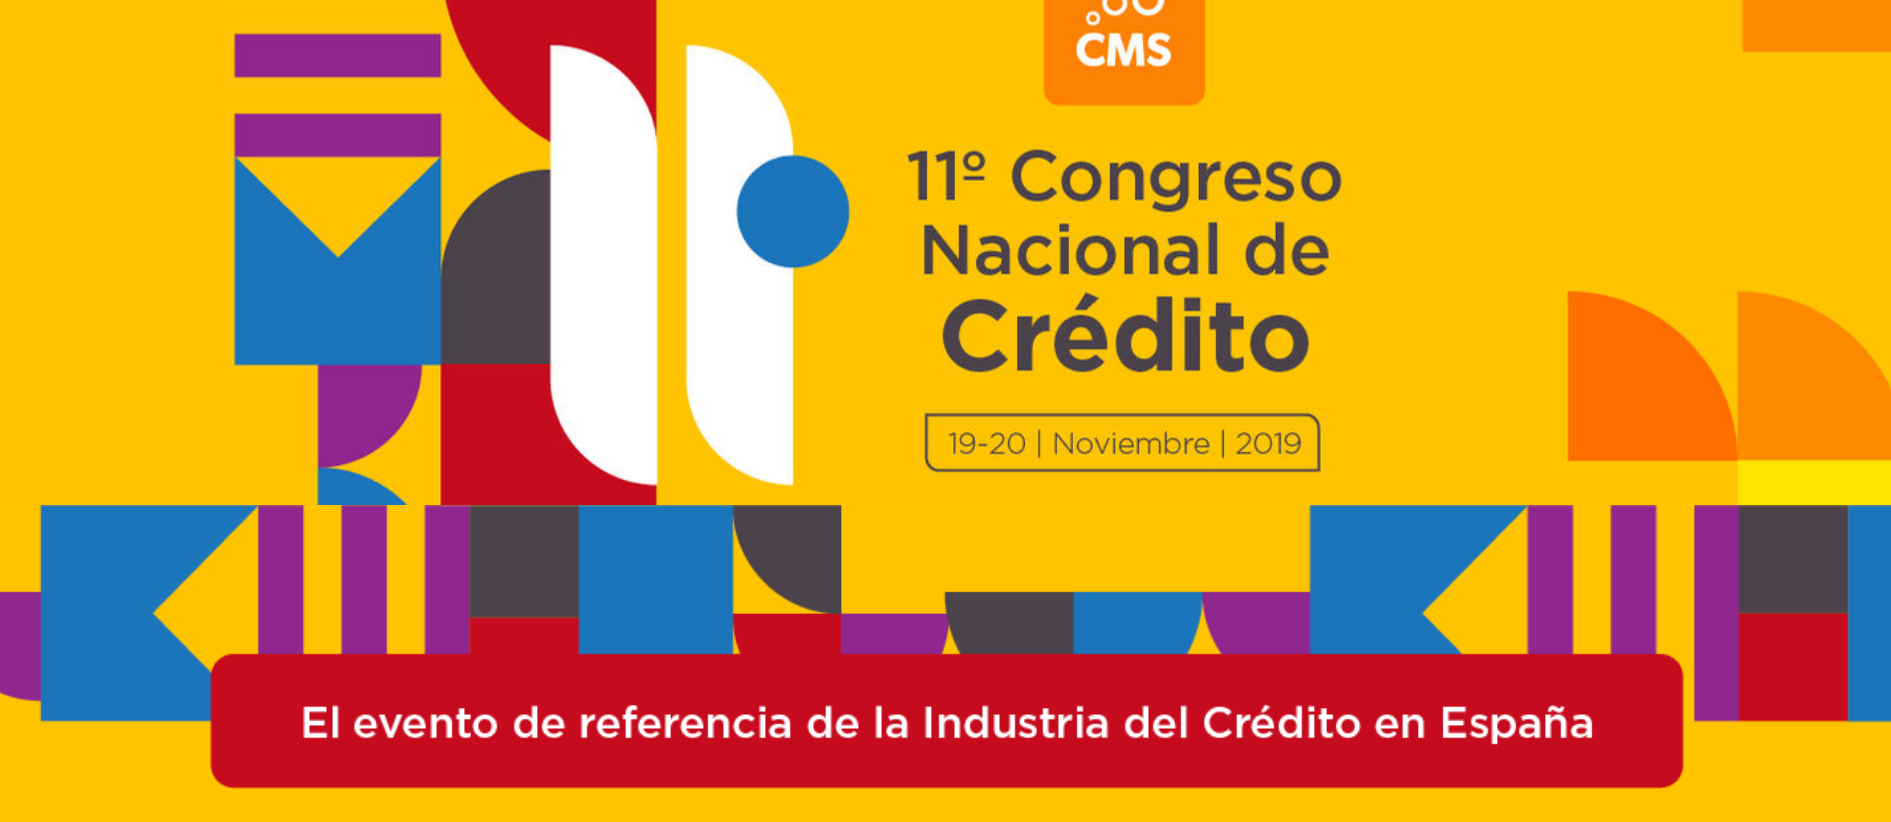 11º Congreso Nacional de Crédito